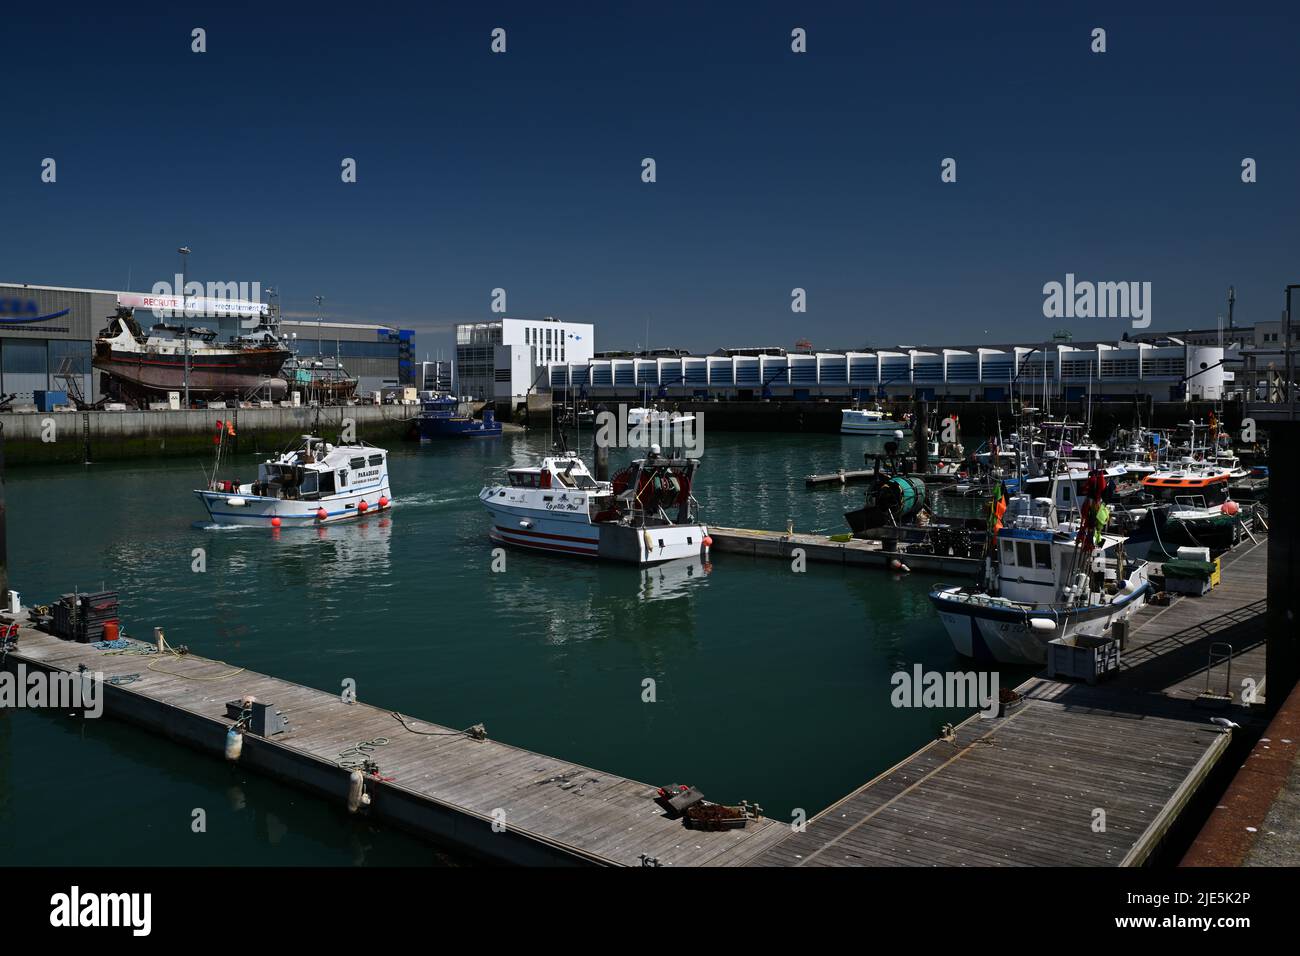 Port de pêche des Sables d'Olonne en Vendée avec bateaux de pêche Stock Photo